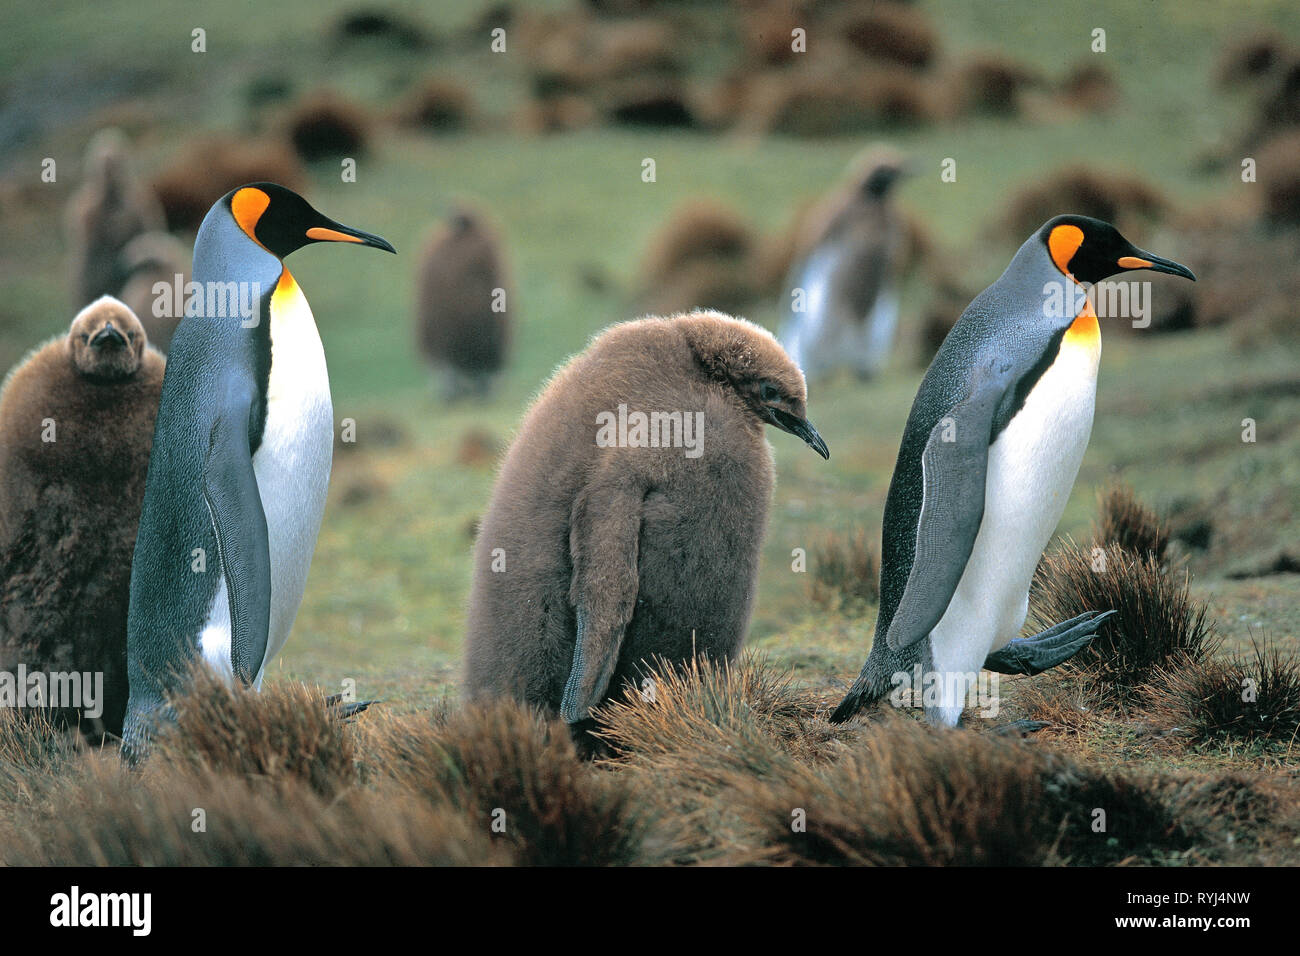 Pingüinos rey (Aptenodytes patagonicus), jóvenes y adultos, Punto de voluntariado, Islas Malvinas, Atlántico Sur Foto de stock